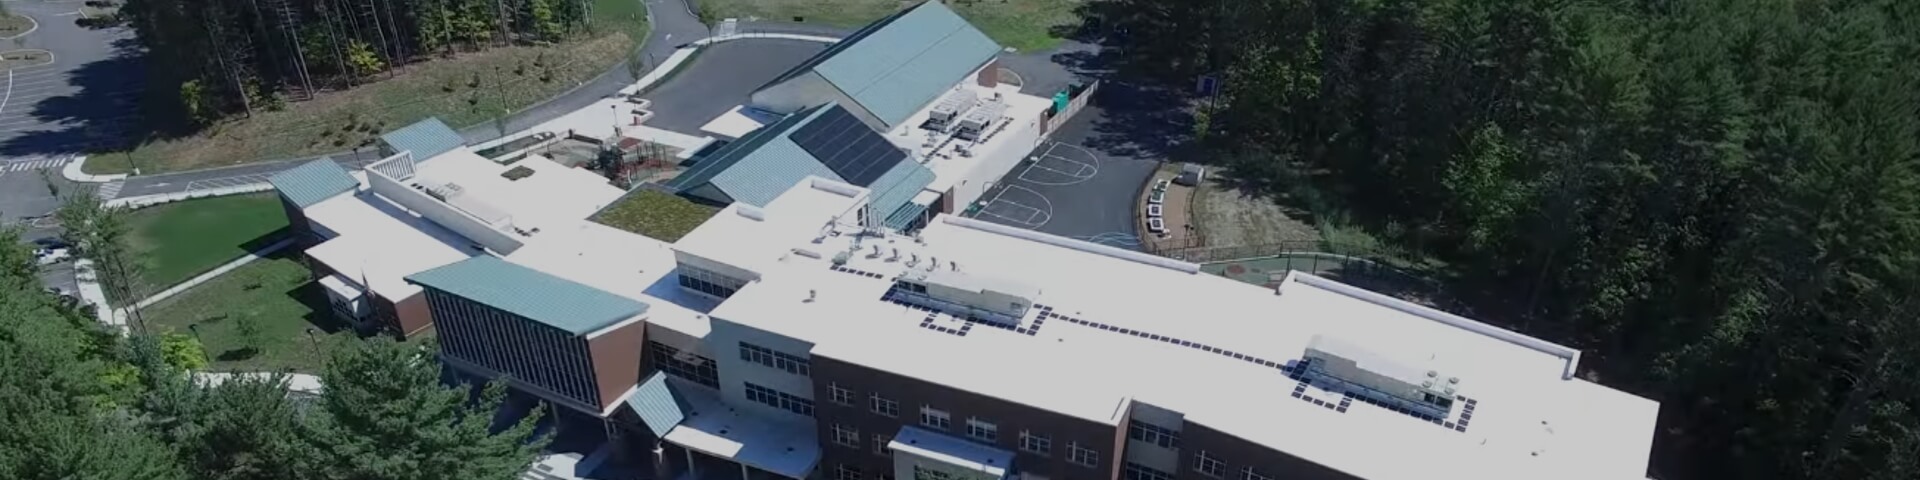 Elementary school building BIM Modeling in Massachusetts